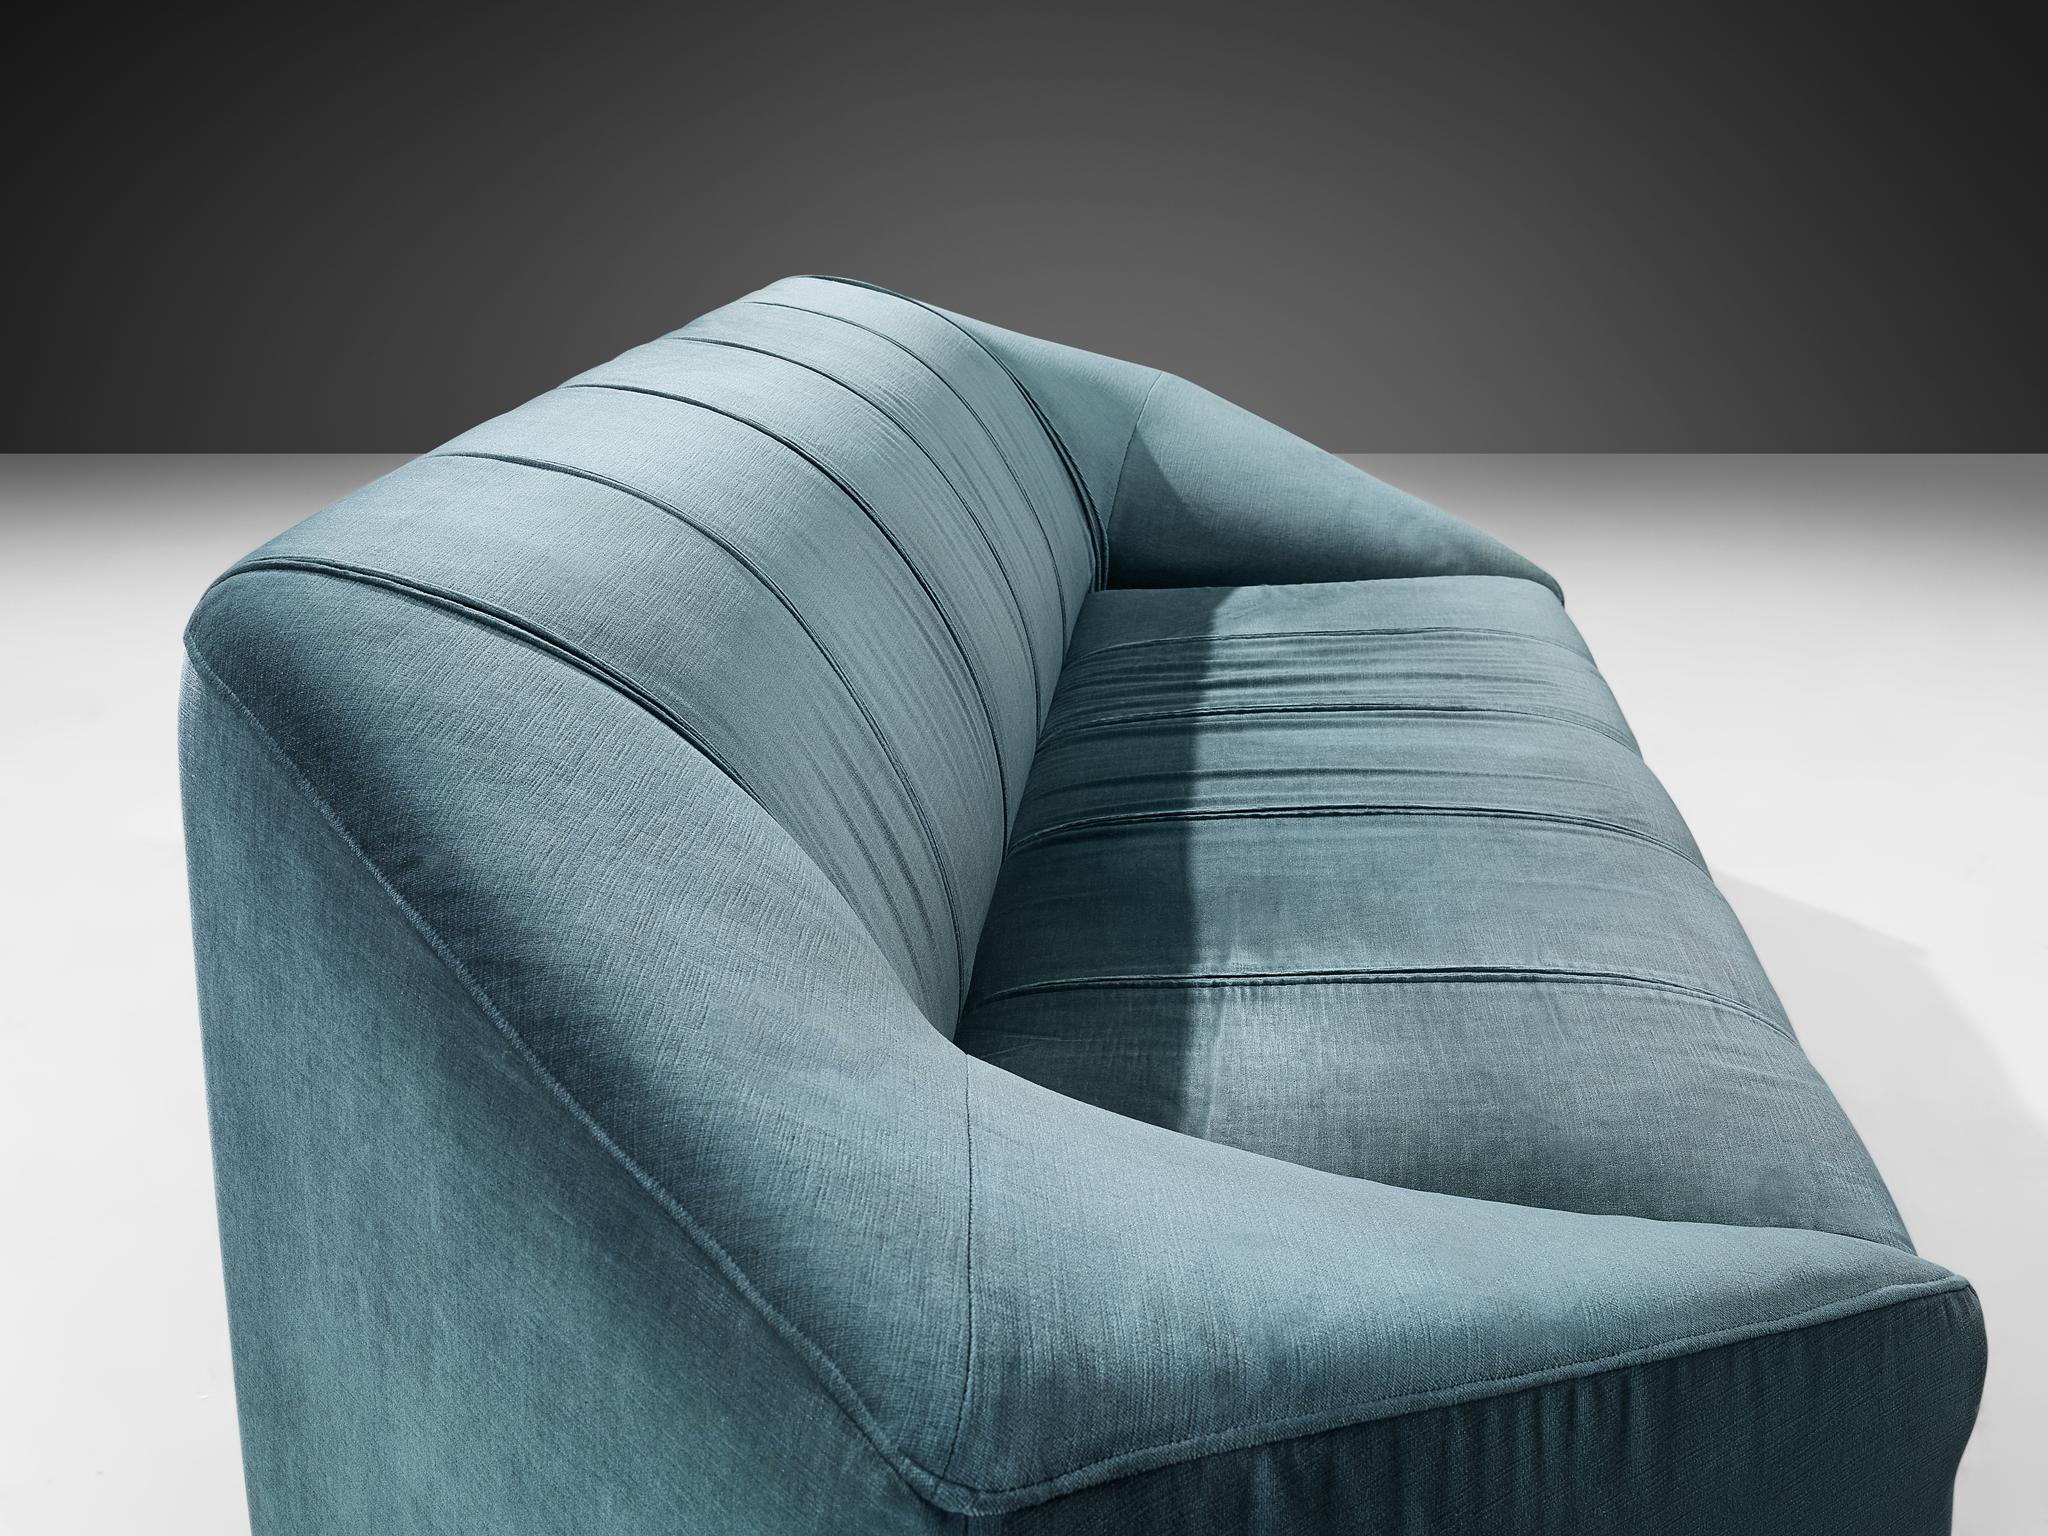 Mid-20th Century Italian Hexagonal Shaped Sofa